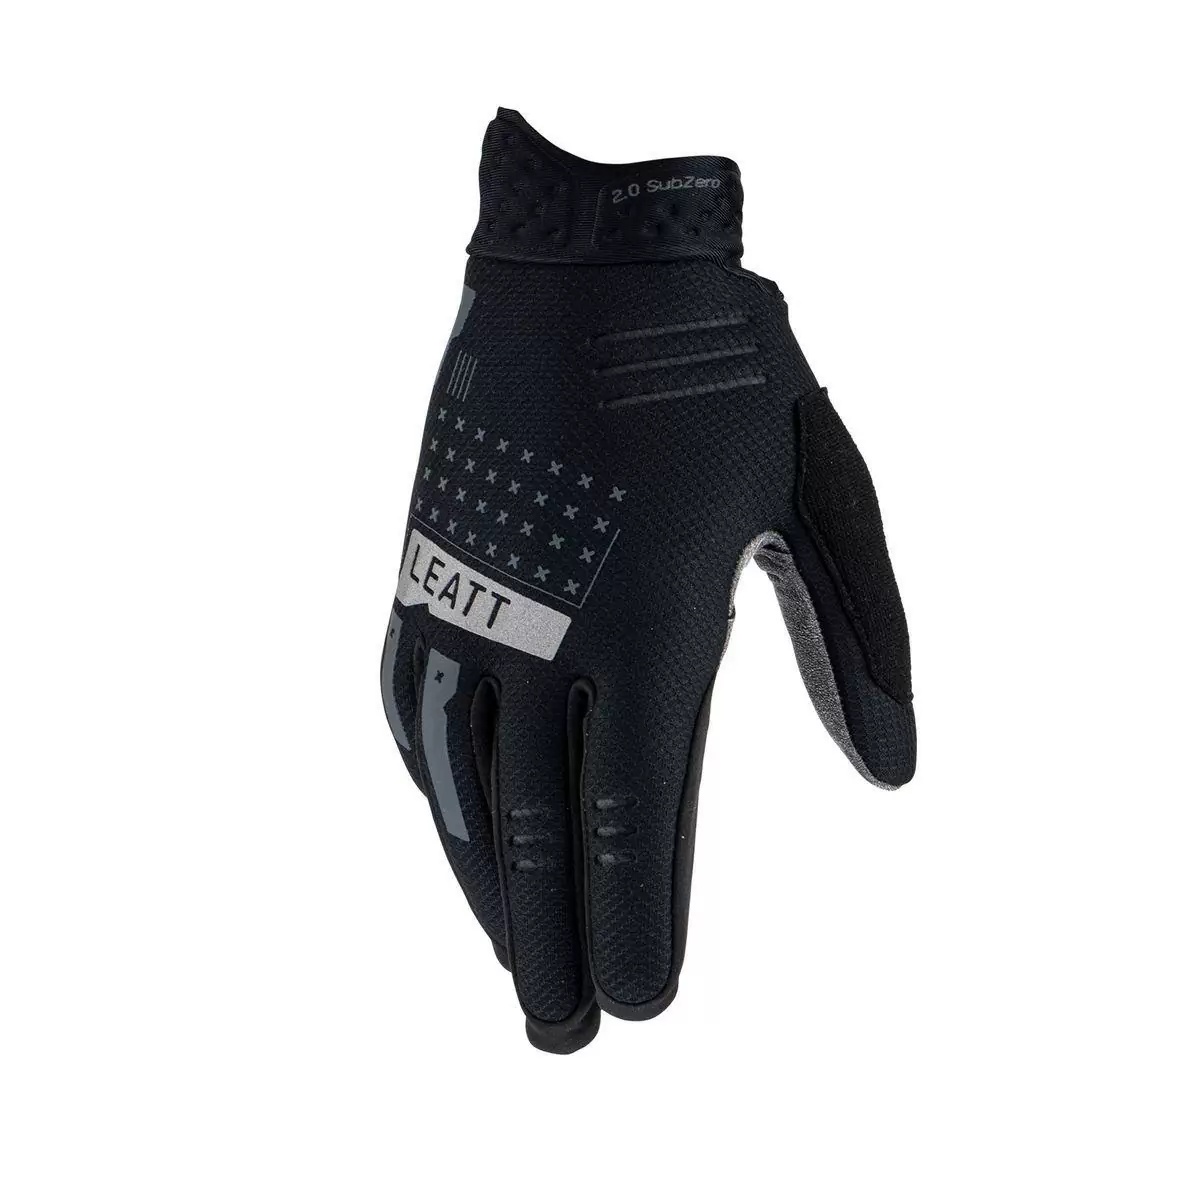 Winter Glove Mtb 2.0 subzero Black size S #2